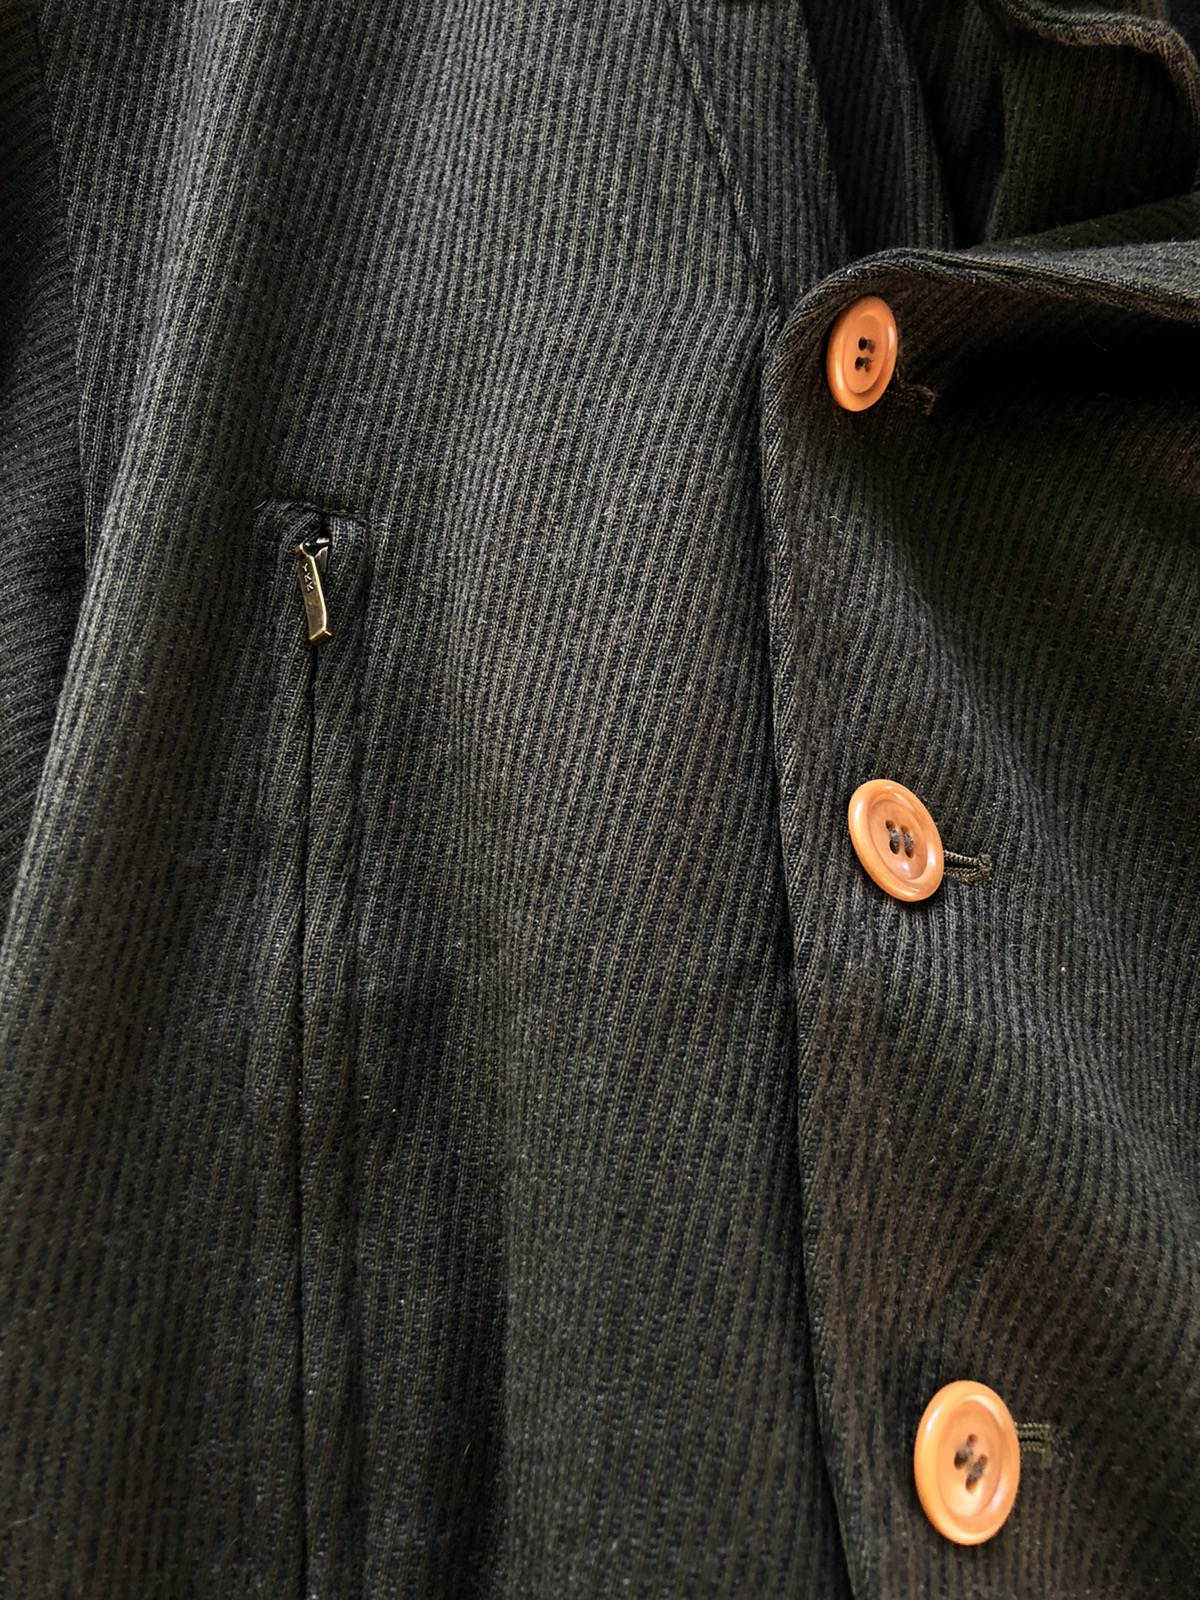 Designer - Japanese Brand x Olivier Massuger button jacket - 8